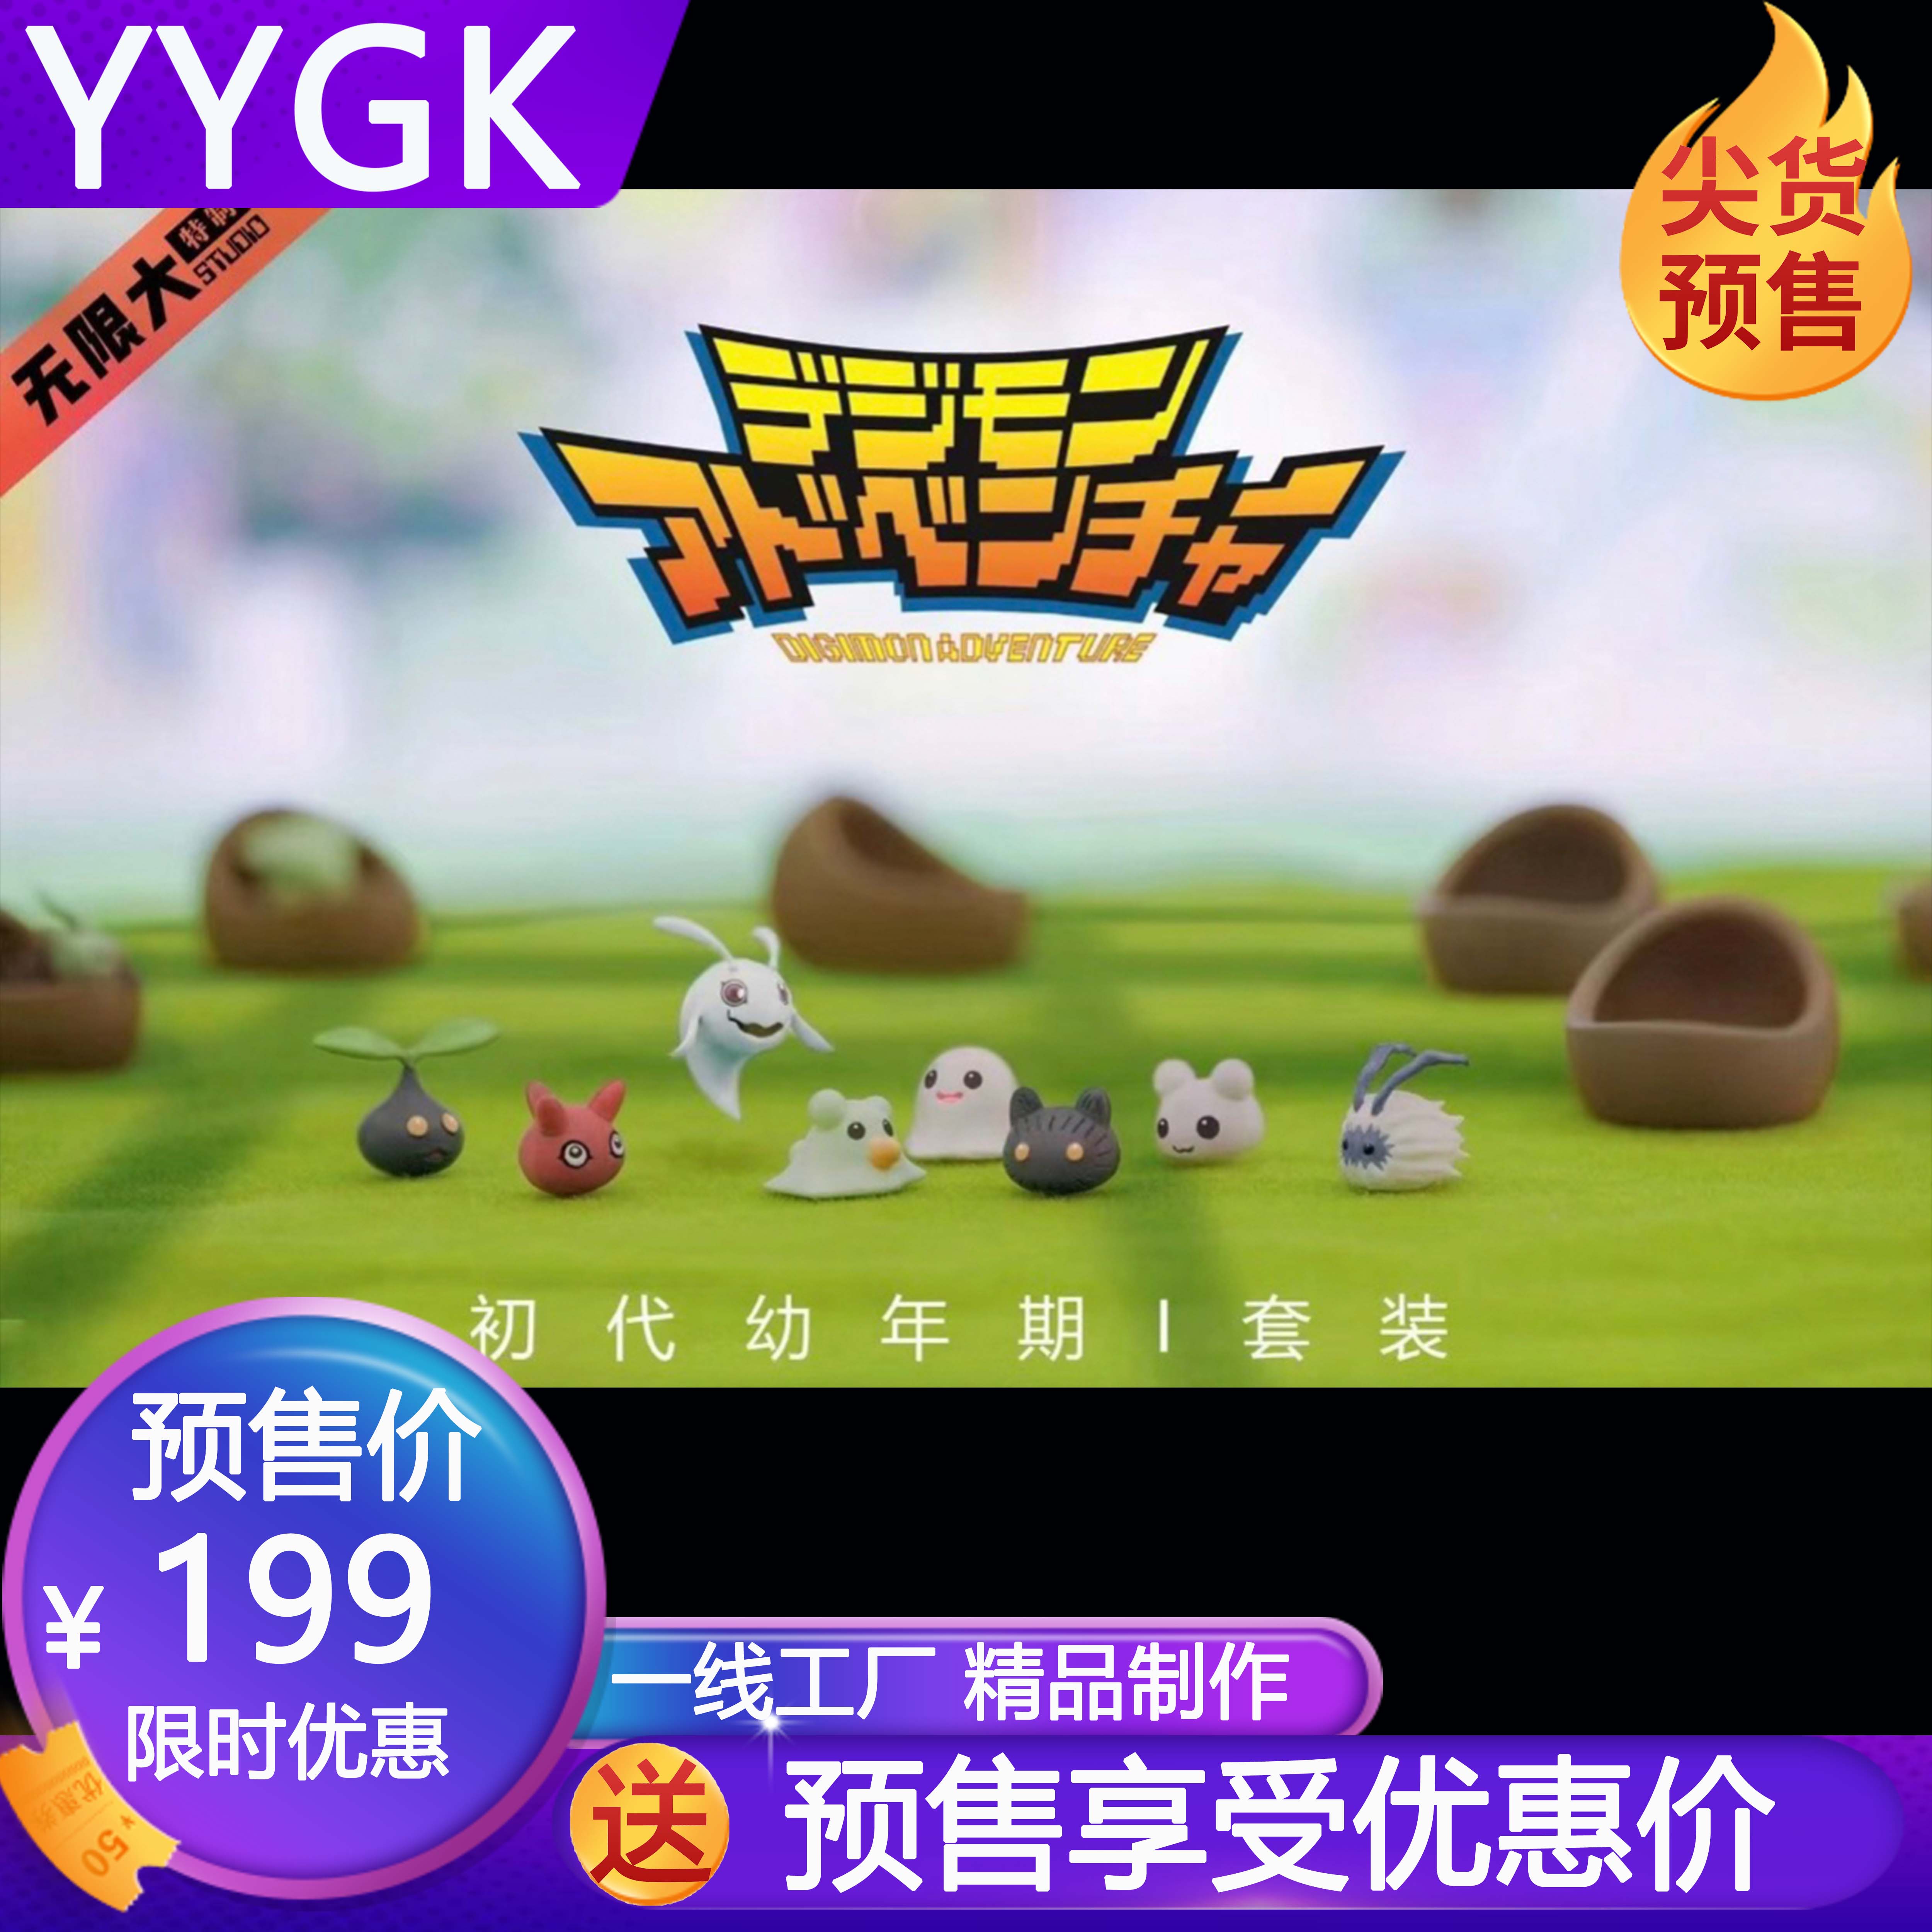 YYGK 预定 无限大数码宝贝 初代幼年期主角团数码蛋 私人定制